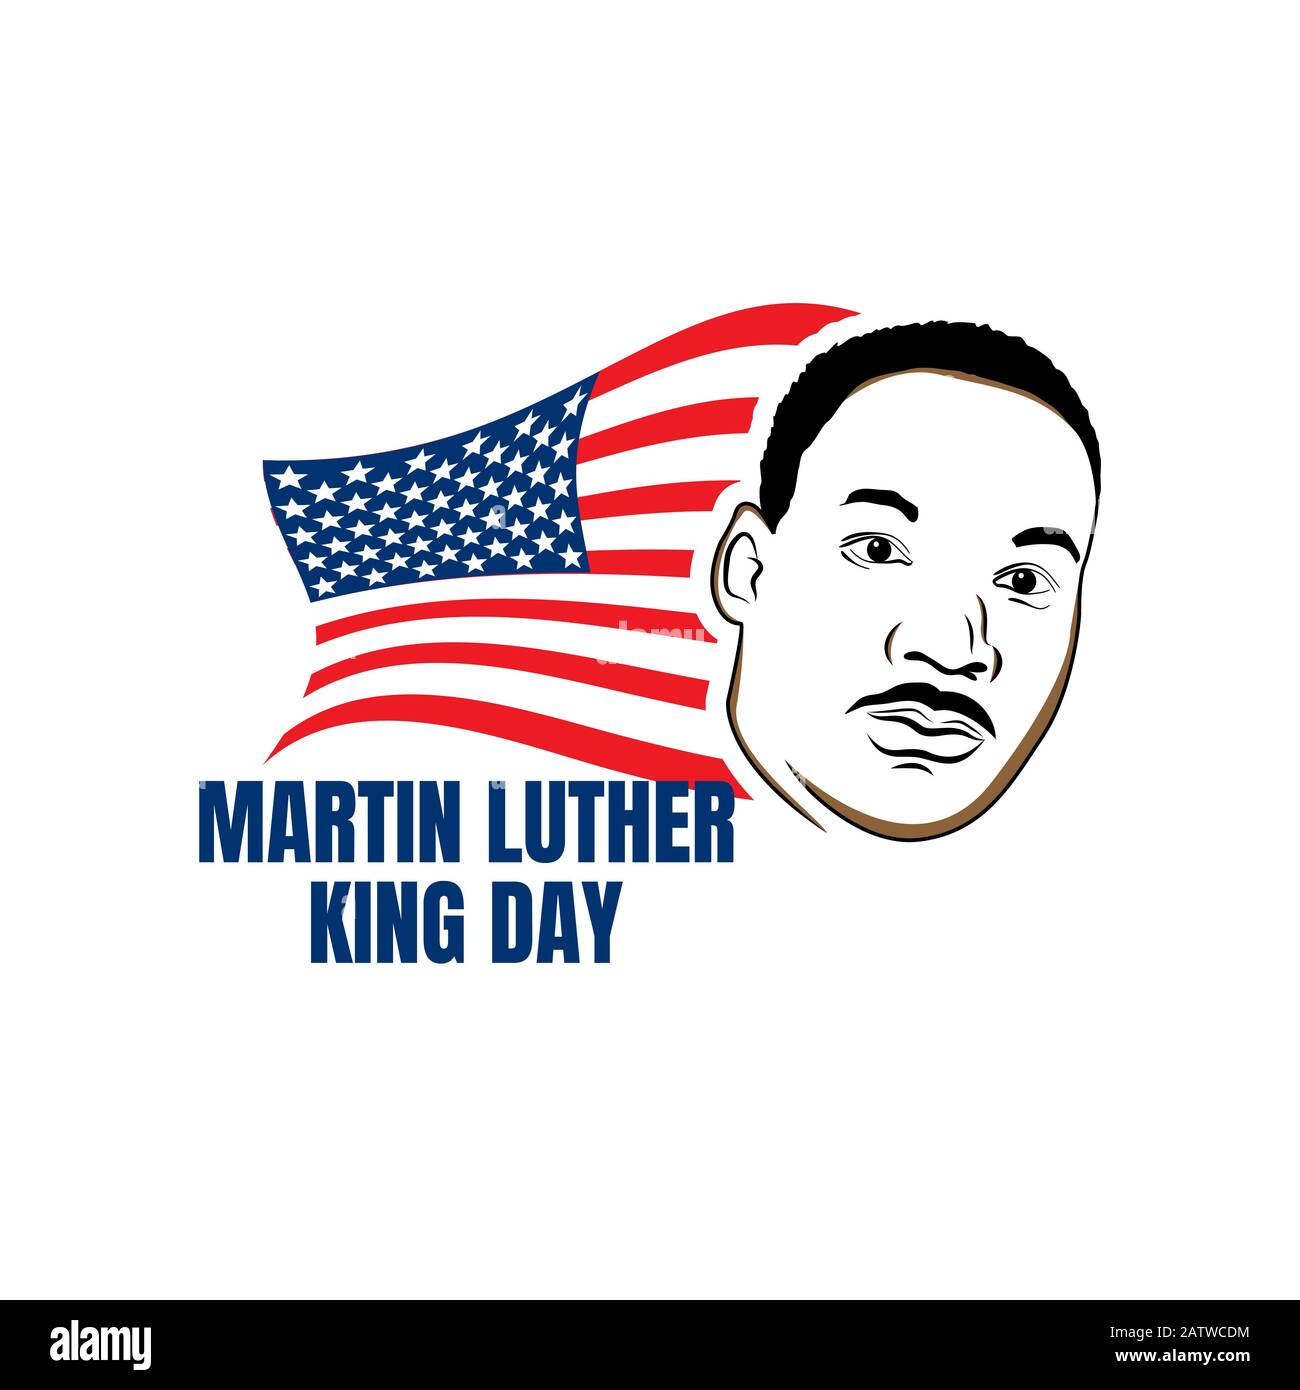 Martin luther King jr Day Mit amerikanischer Flagge. MLK-Banner zum Gedenktag. Editierbare Vektorgrafiken. EPS 10 Stock Vektor